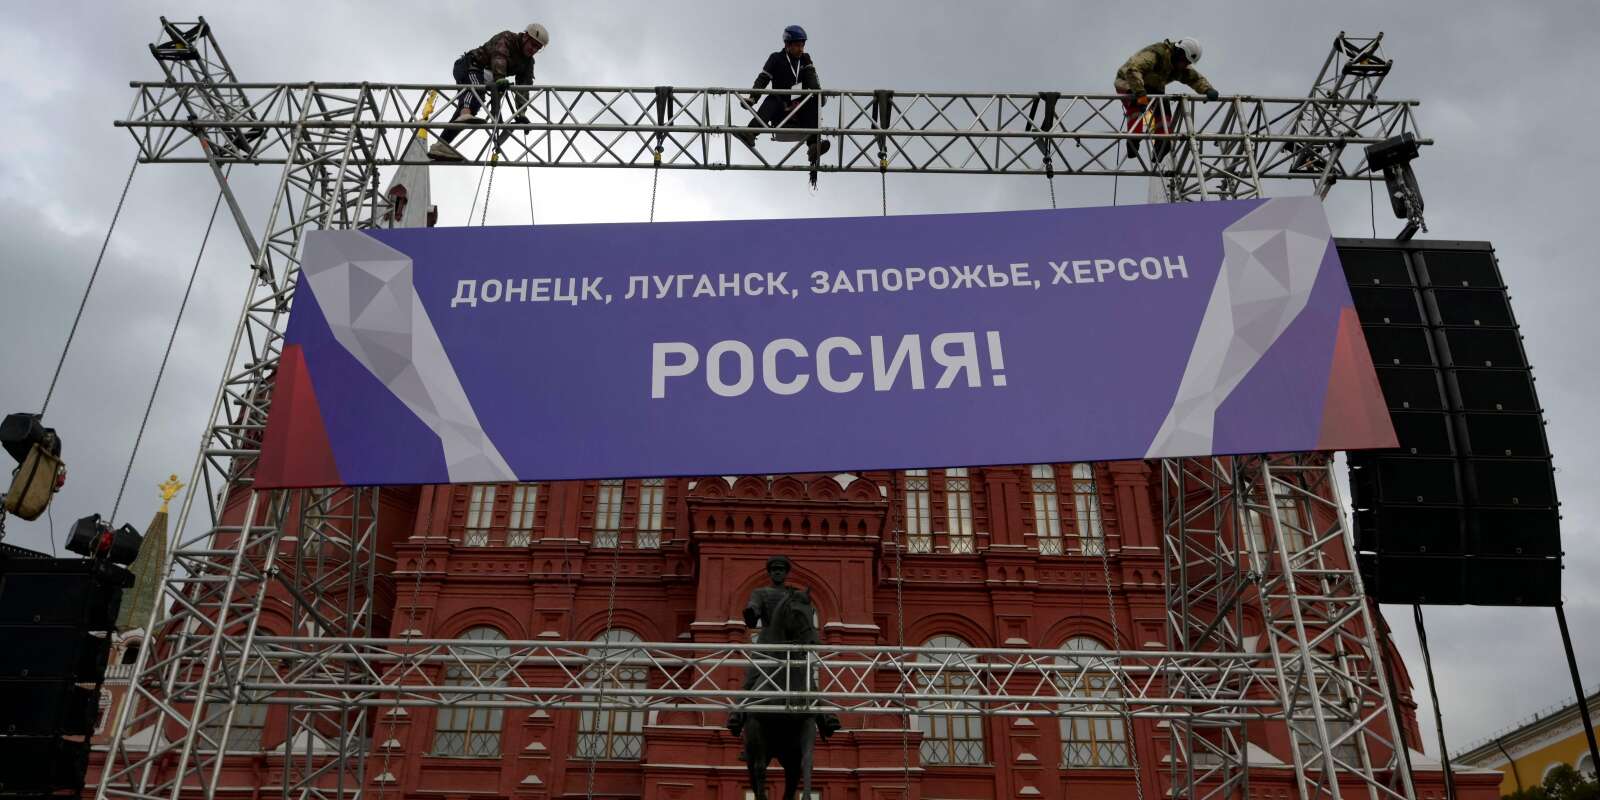 Des ouvrier installent une banderole indiquant « Donetsk, Louhansk, Zaporijiaa, Kherson - Russie ! » au sommet d’une construction d’échaffaudages installés sur la Place Rouge de Moscou, le 29 septembre 2022.